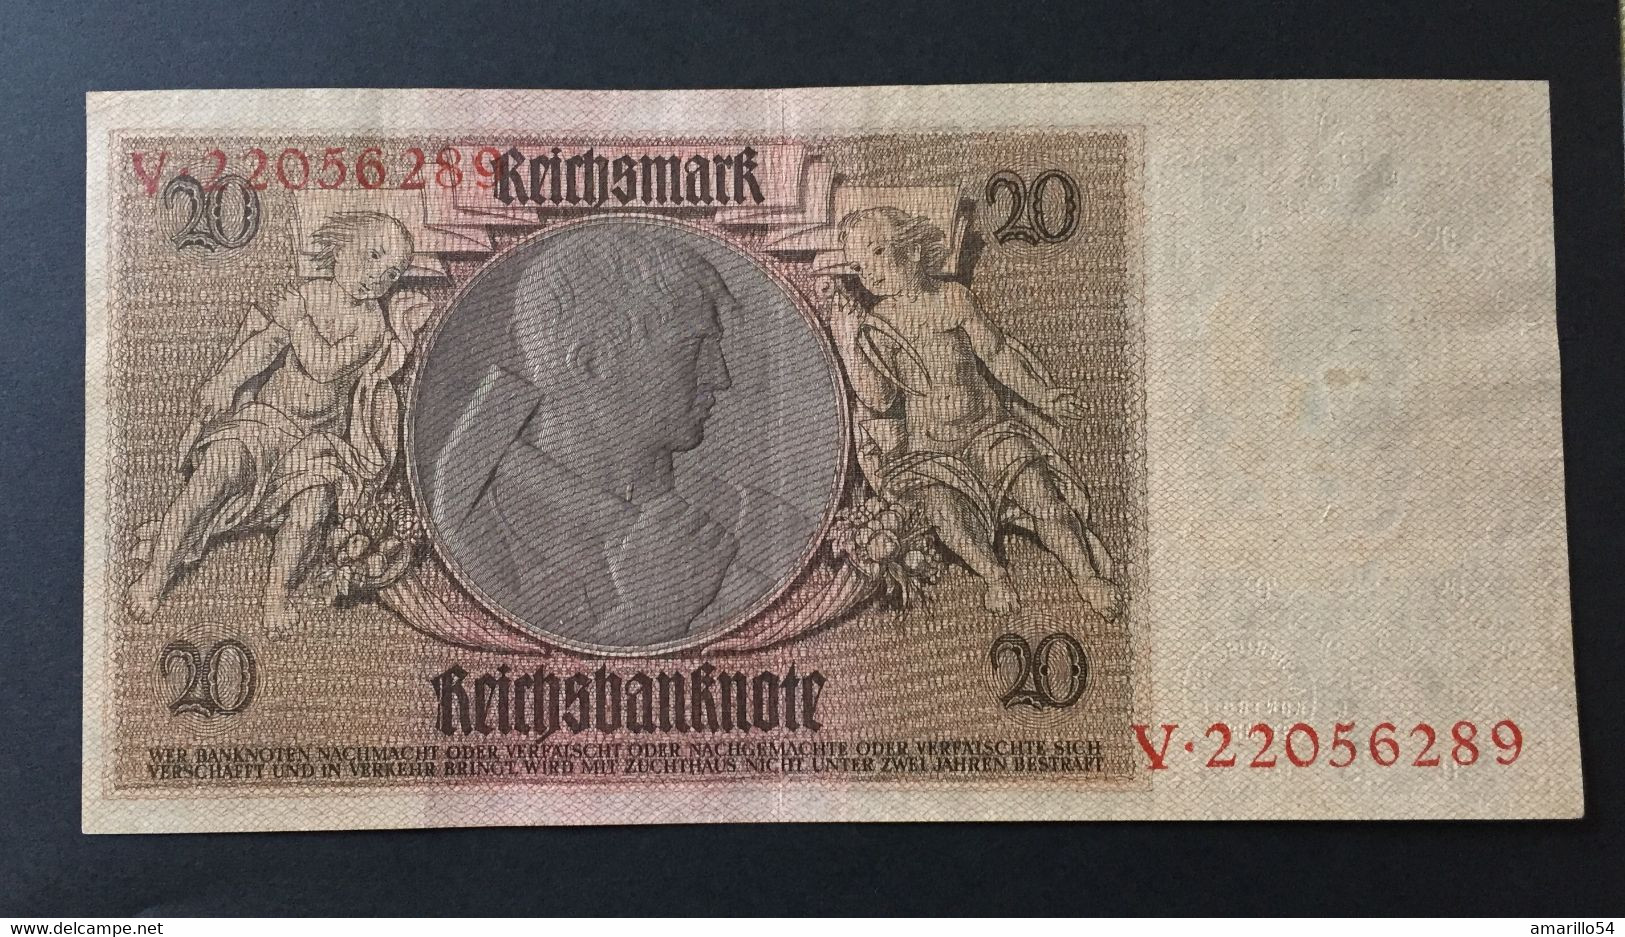 SELTEN Banknote 20 Reichsmark1929 Deutschland Germany Erhaltung Siehe Scans - 20 Reichsmark